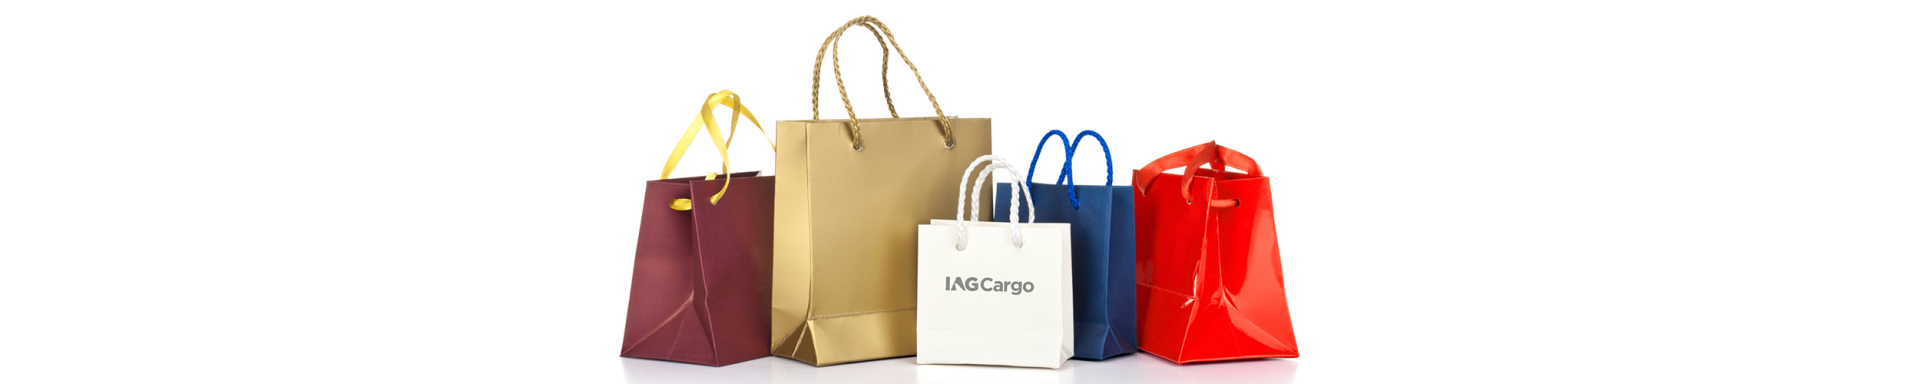 Industries | IAG Cargo